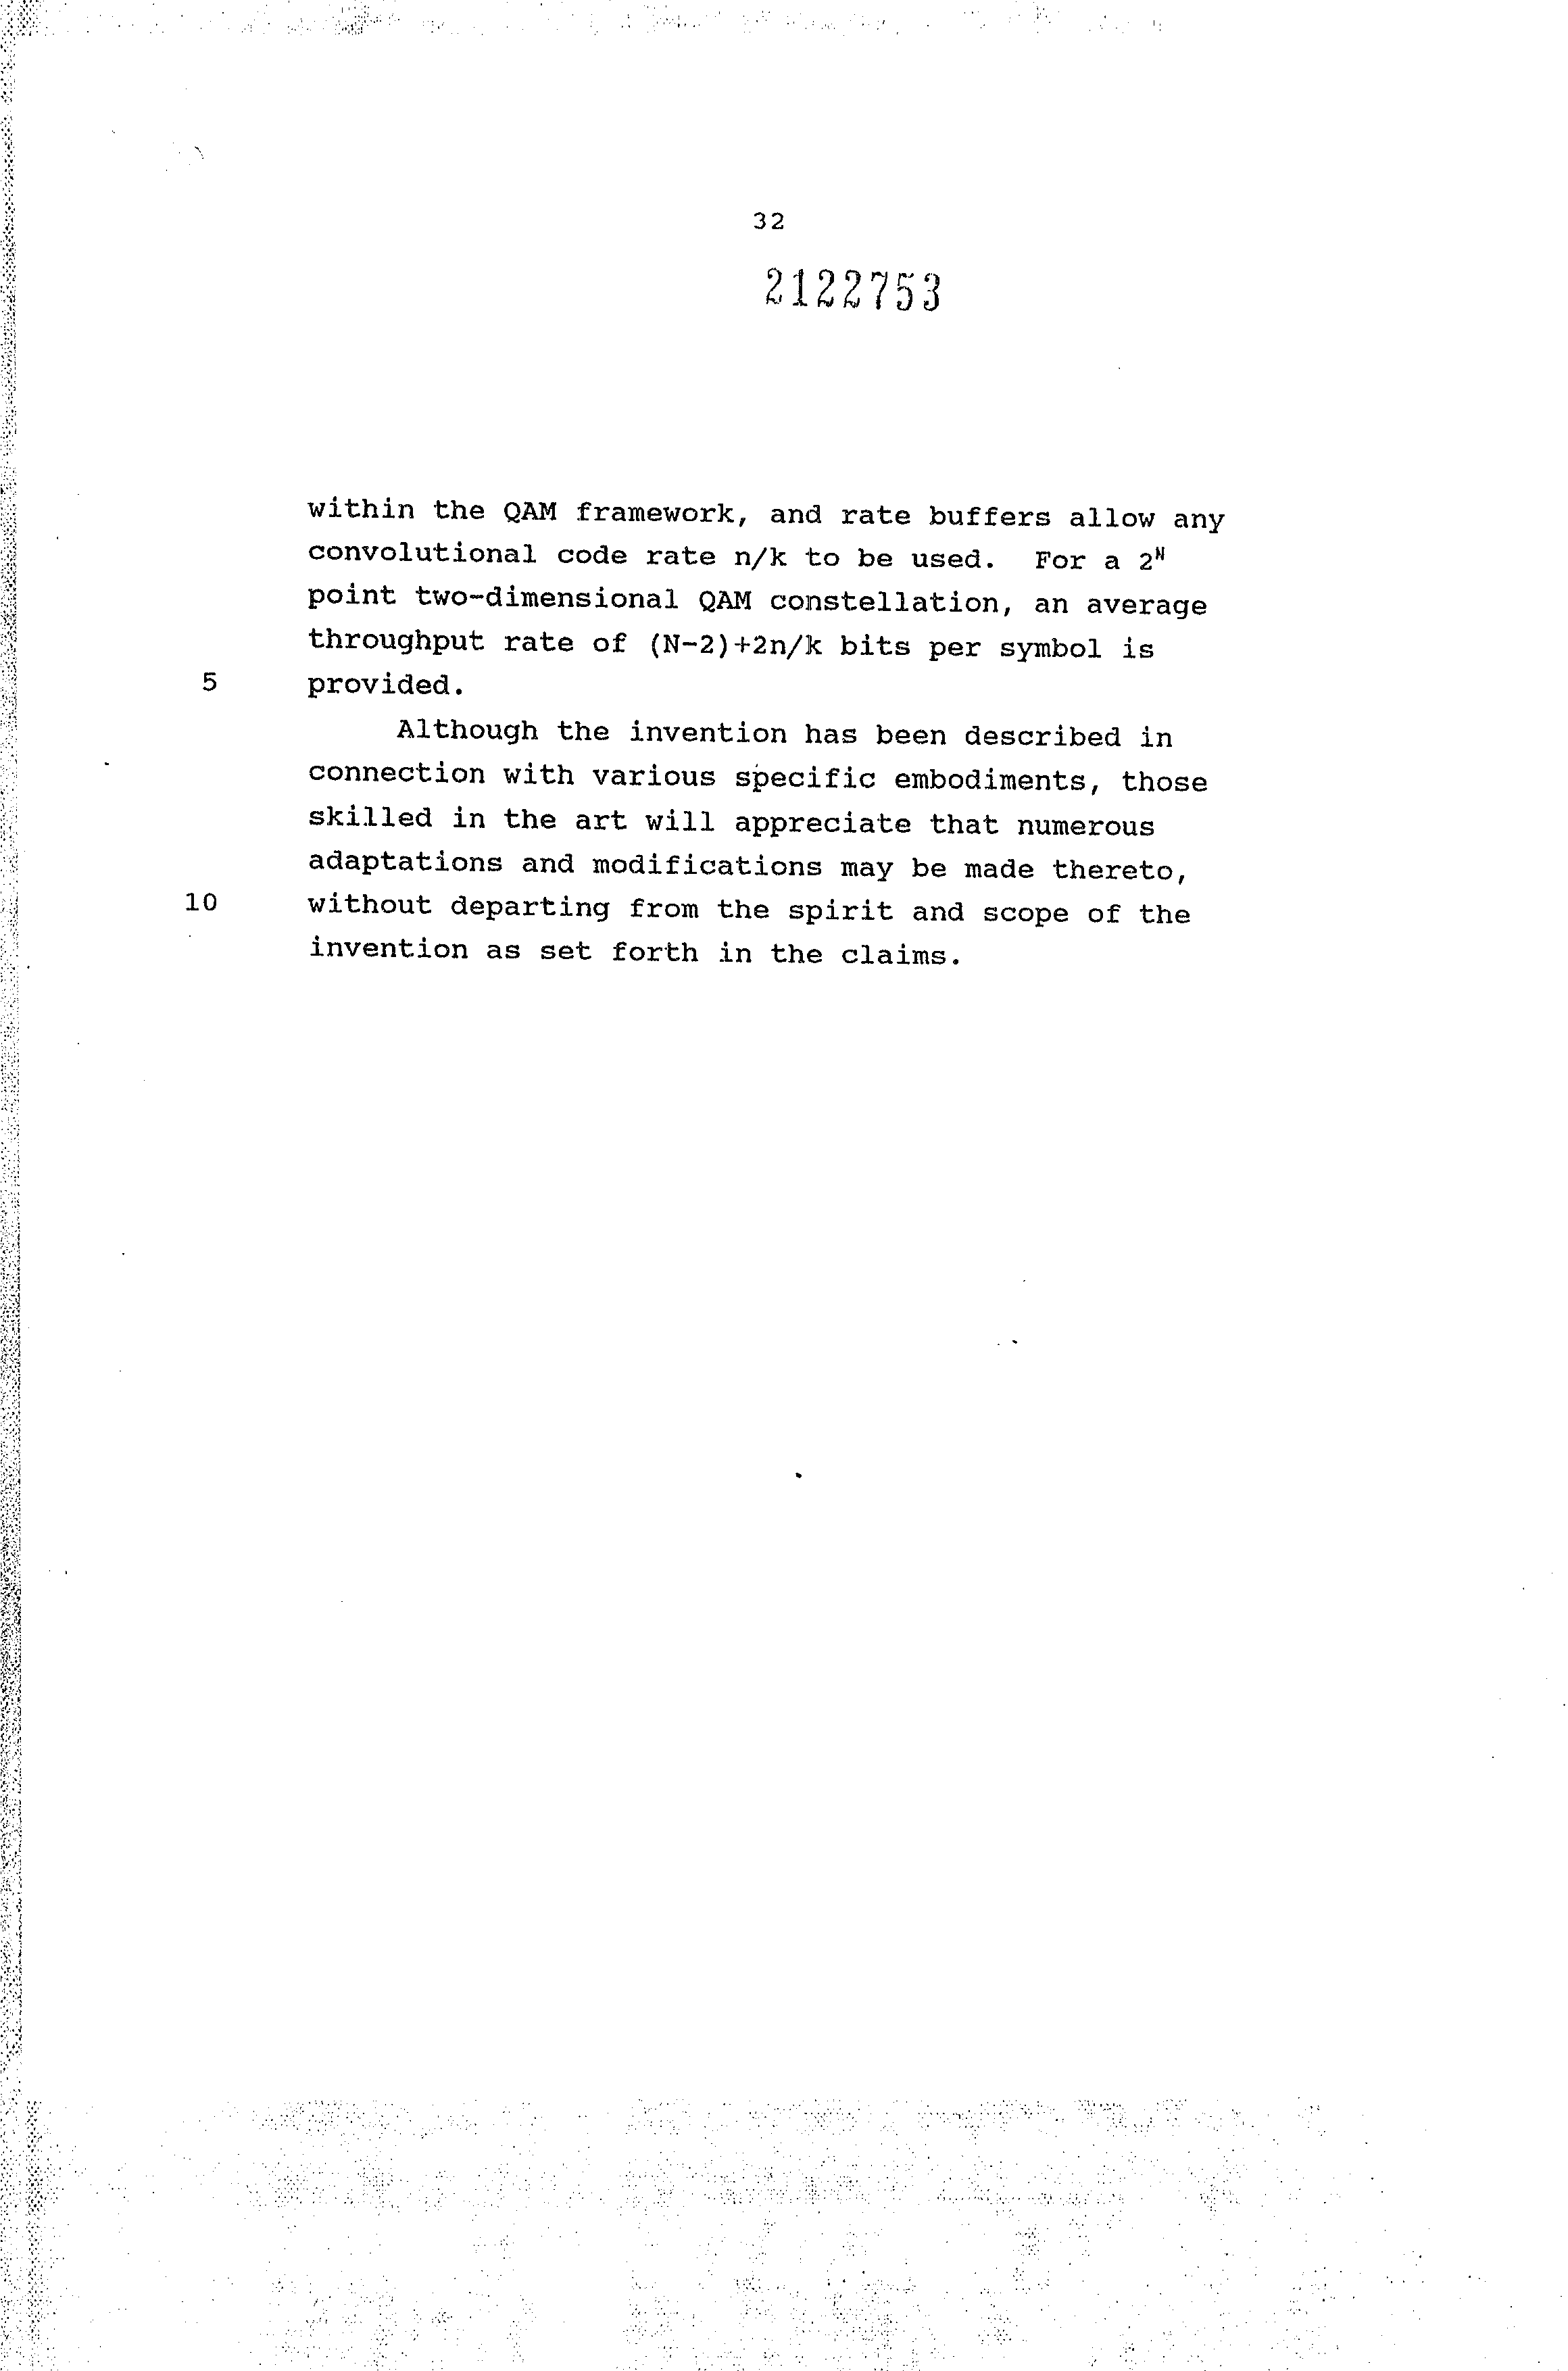 Canadian Patent Document 2122753. Description 19941210. Image 32 of 32